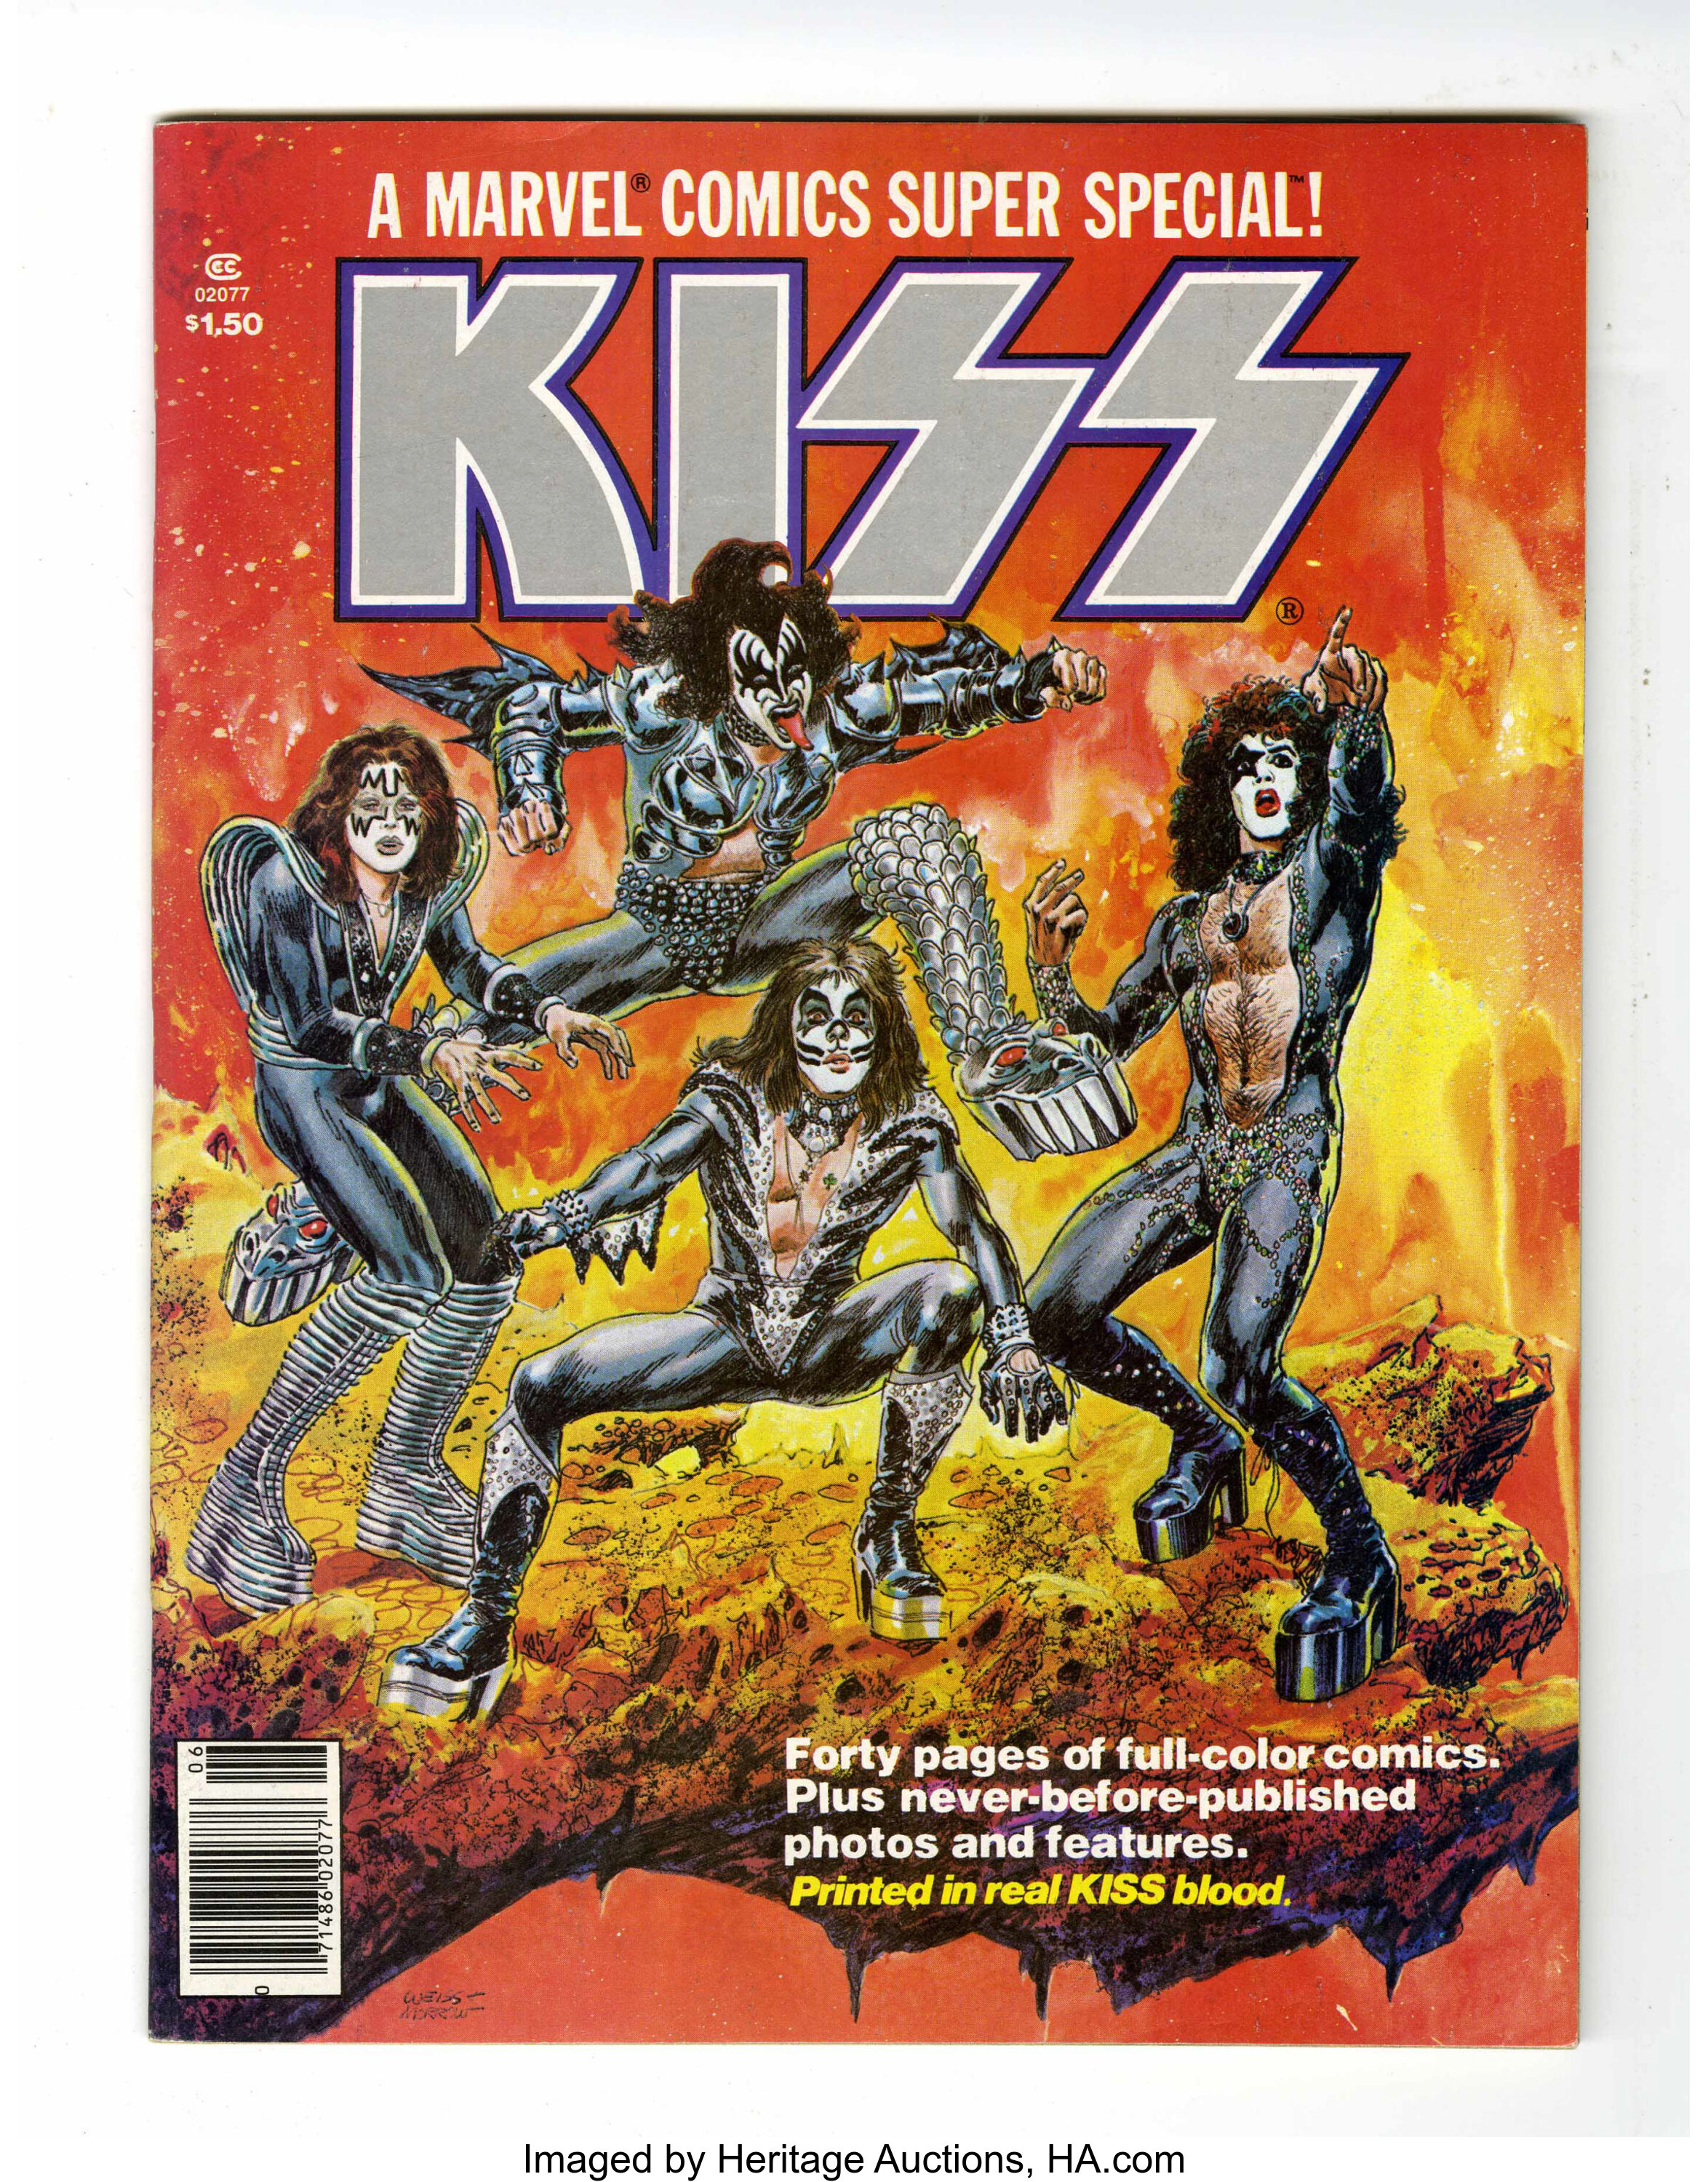 Marvel Comics Super Special 1 Kiss Marvel 1977 Condition Lot